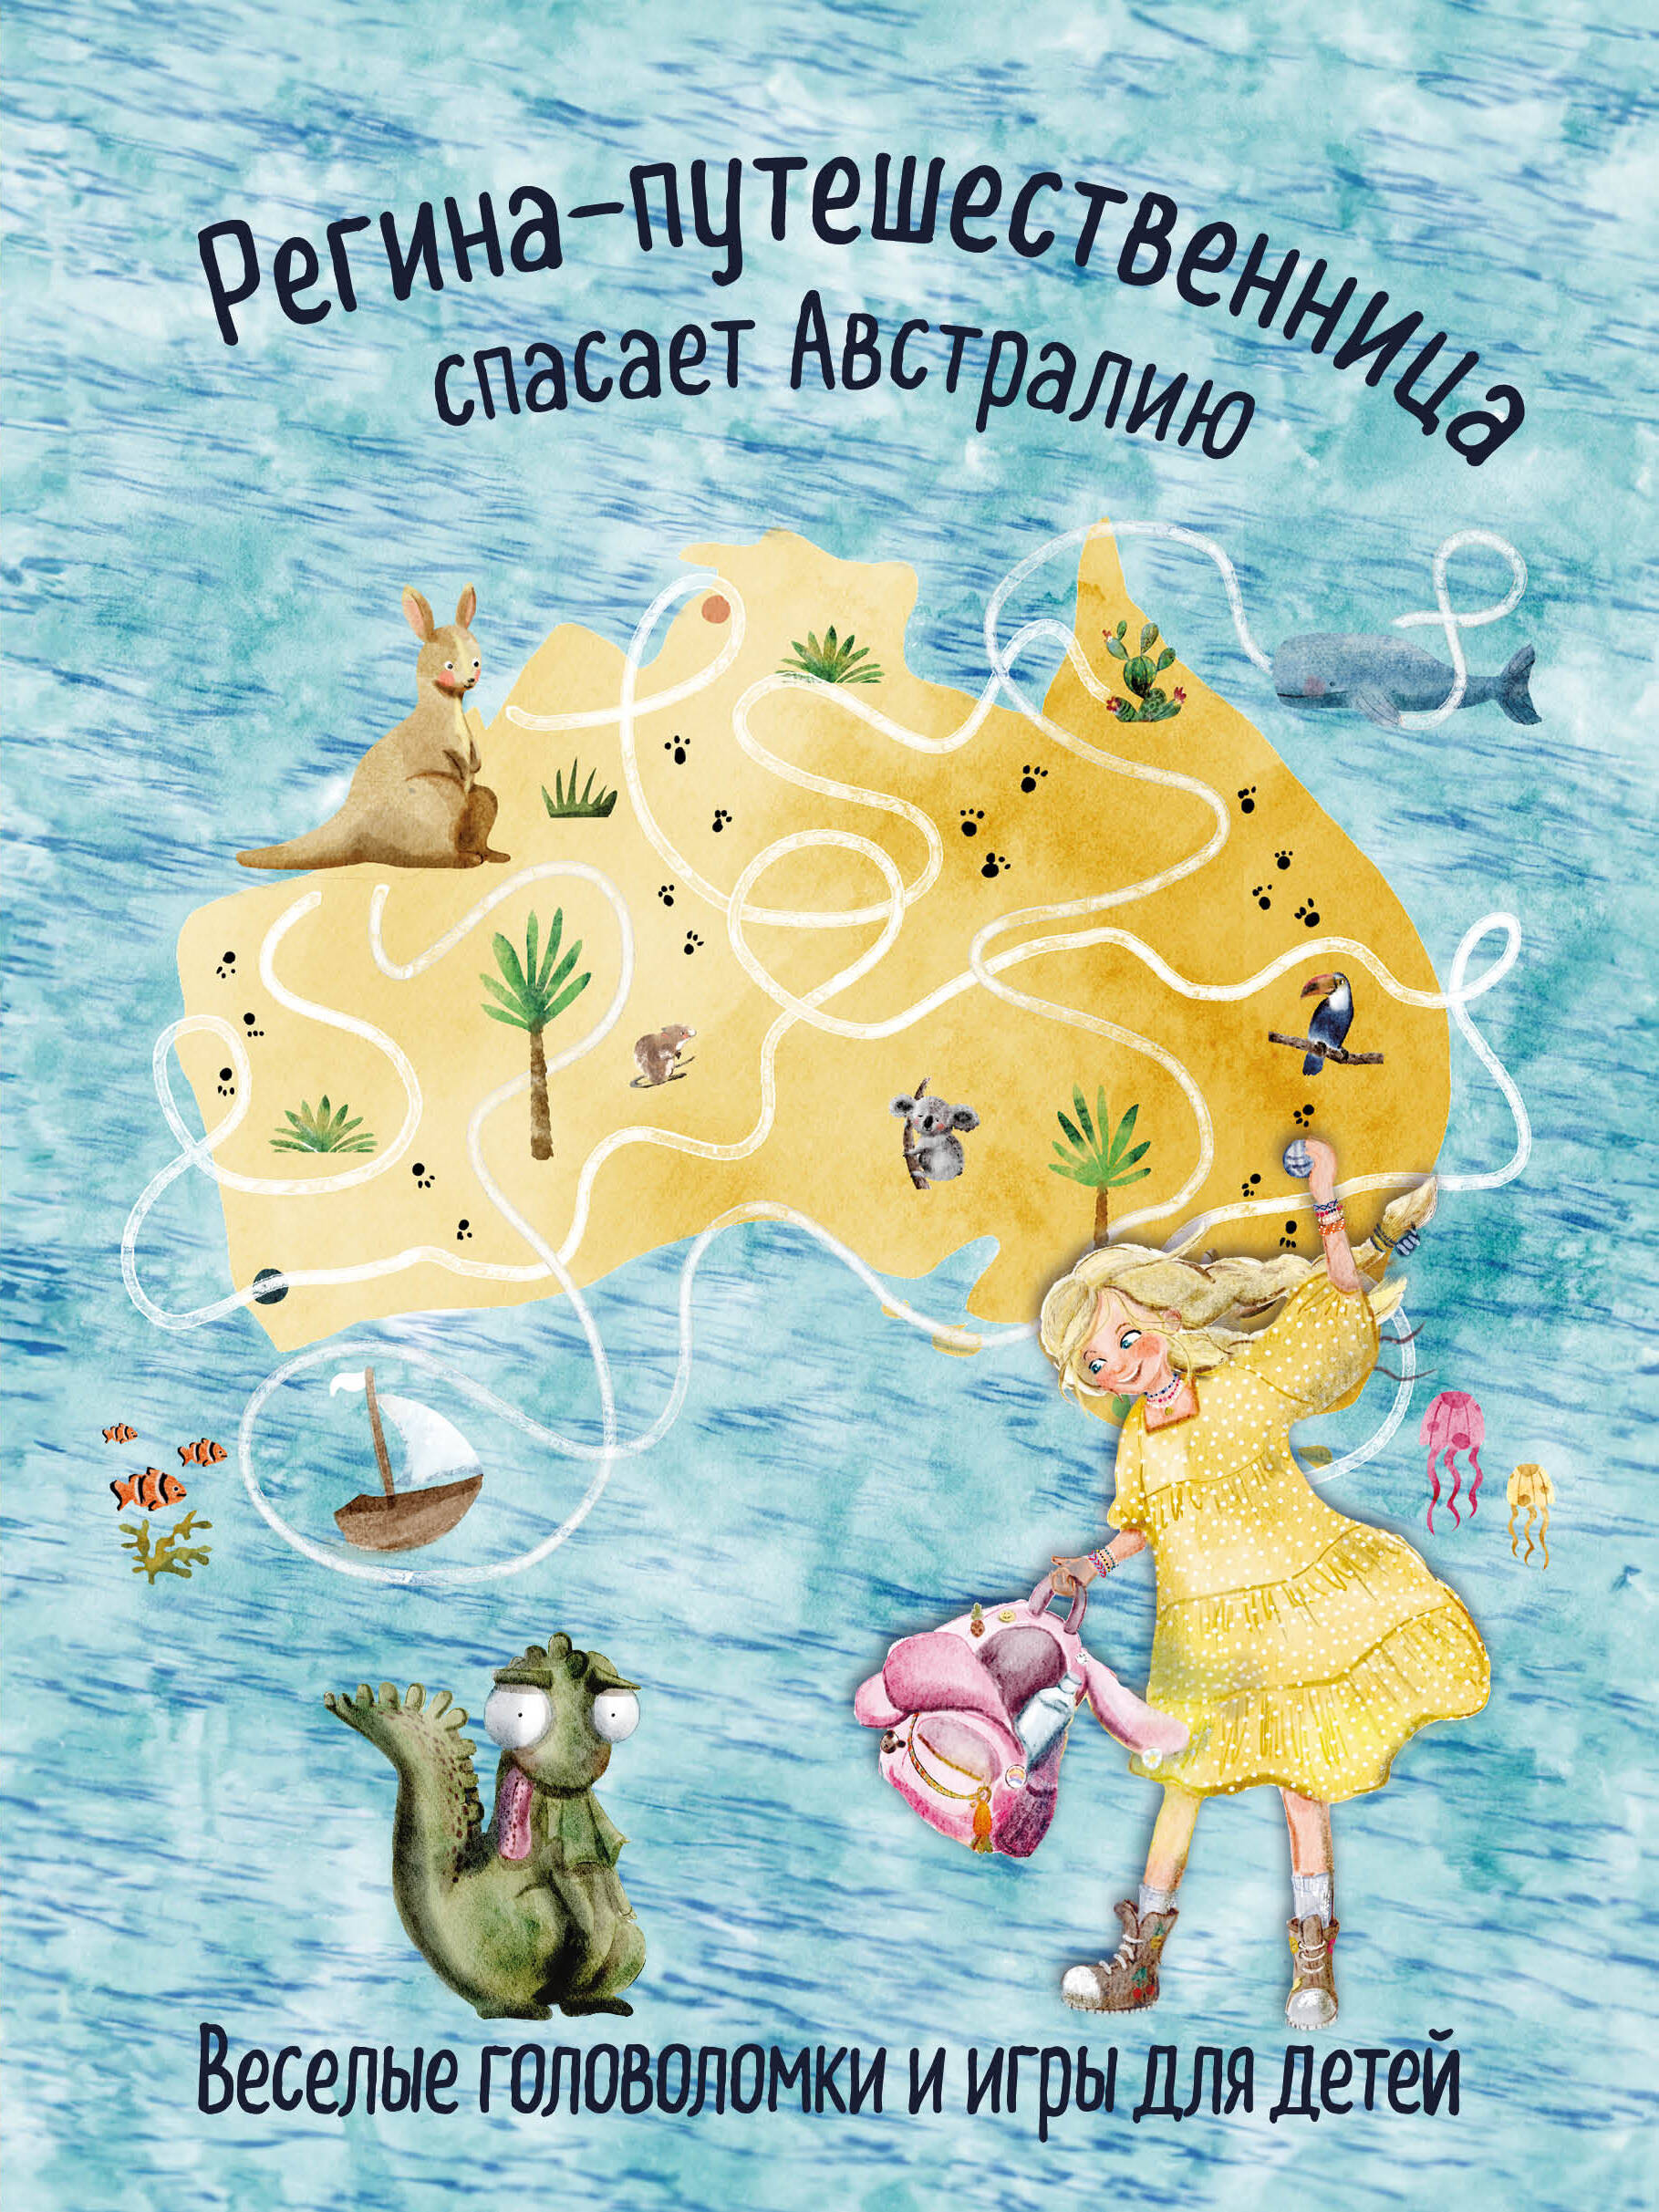  книга Регина-путешественница спасает Австралию. Веселые головоломки и игры для детей